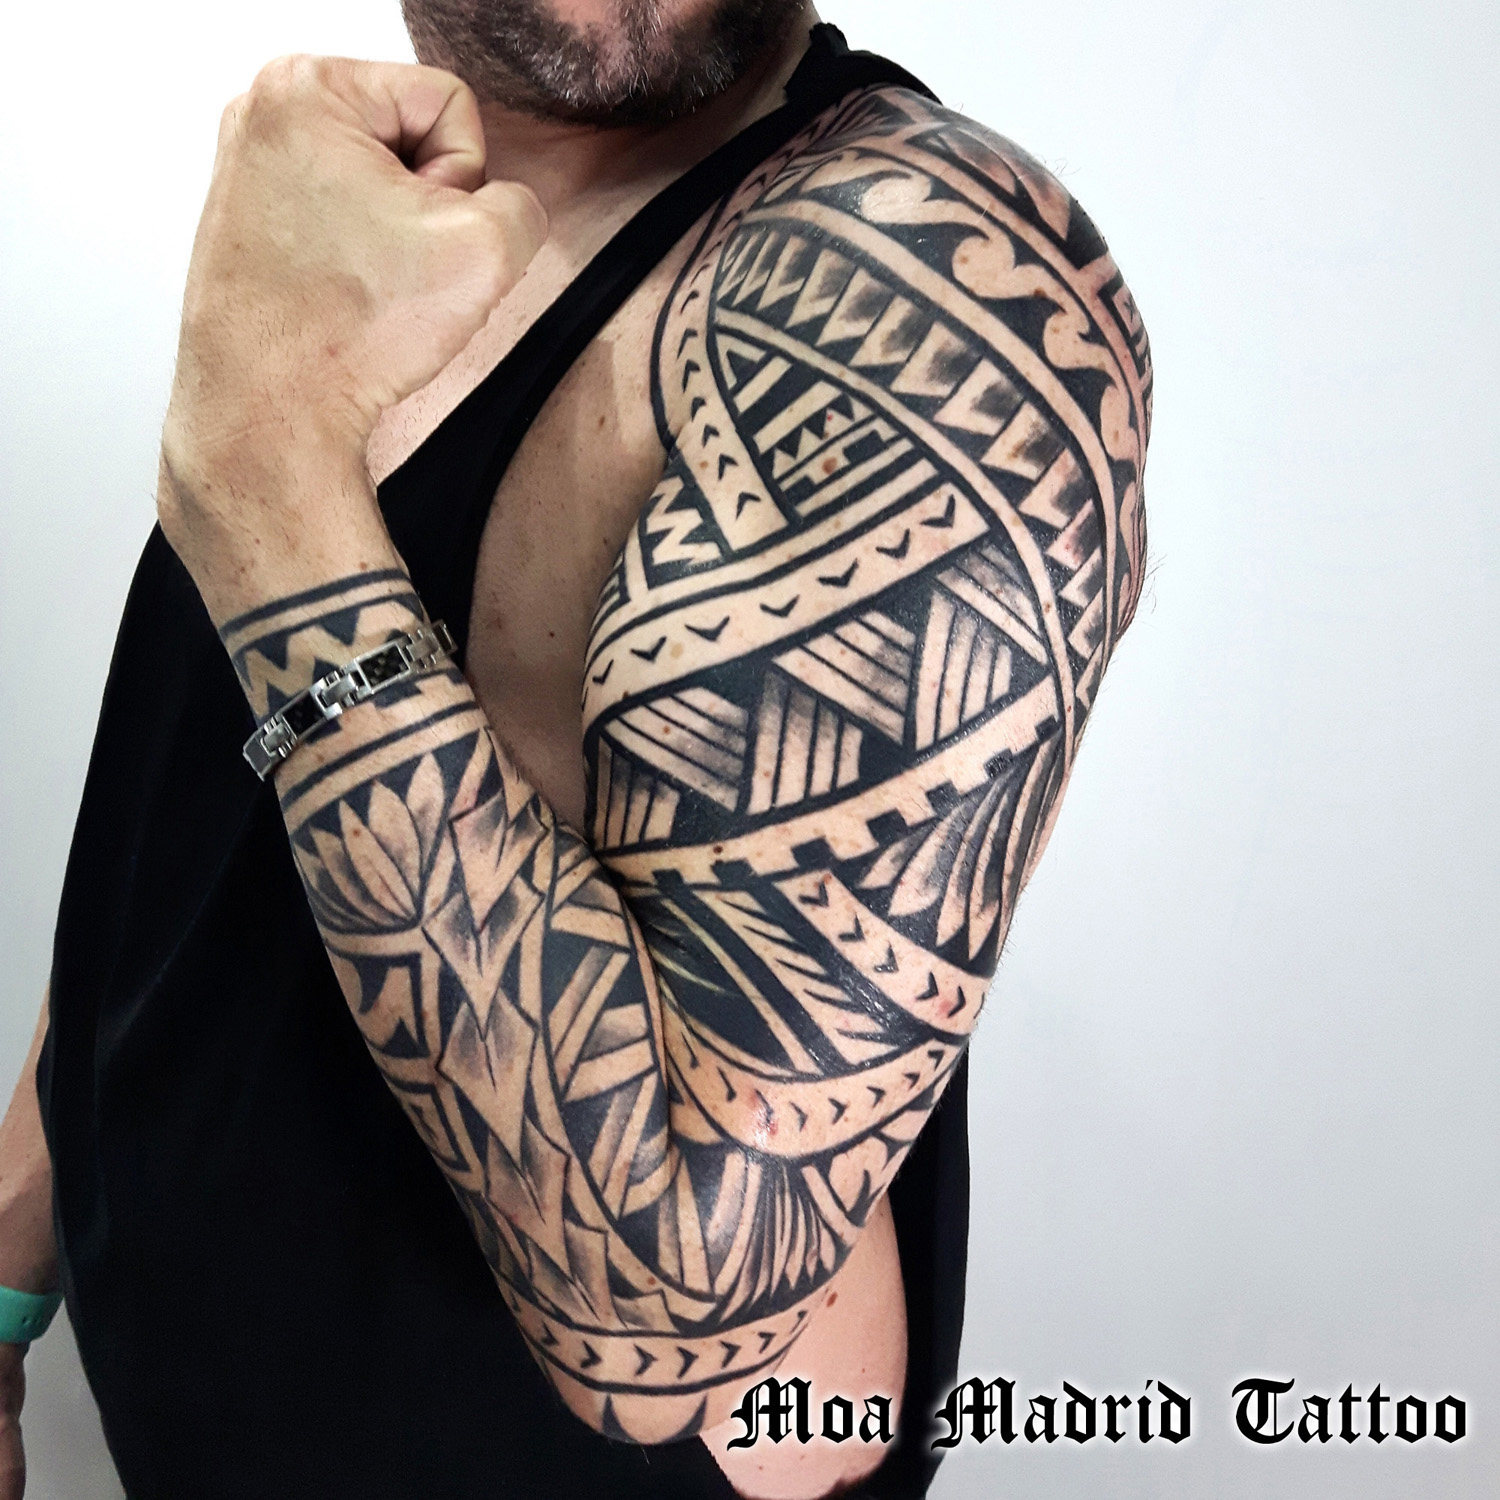 Brazo entero tatuado maorí en Madrid